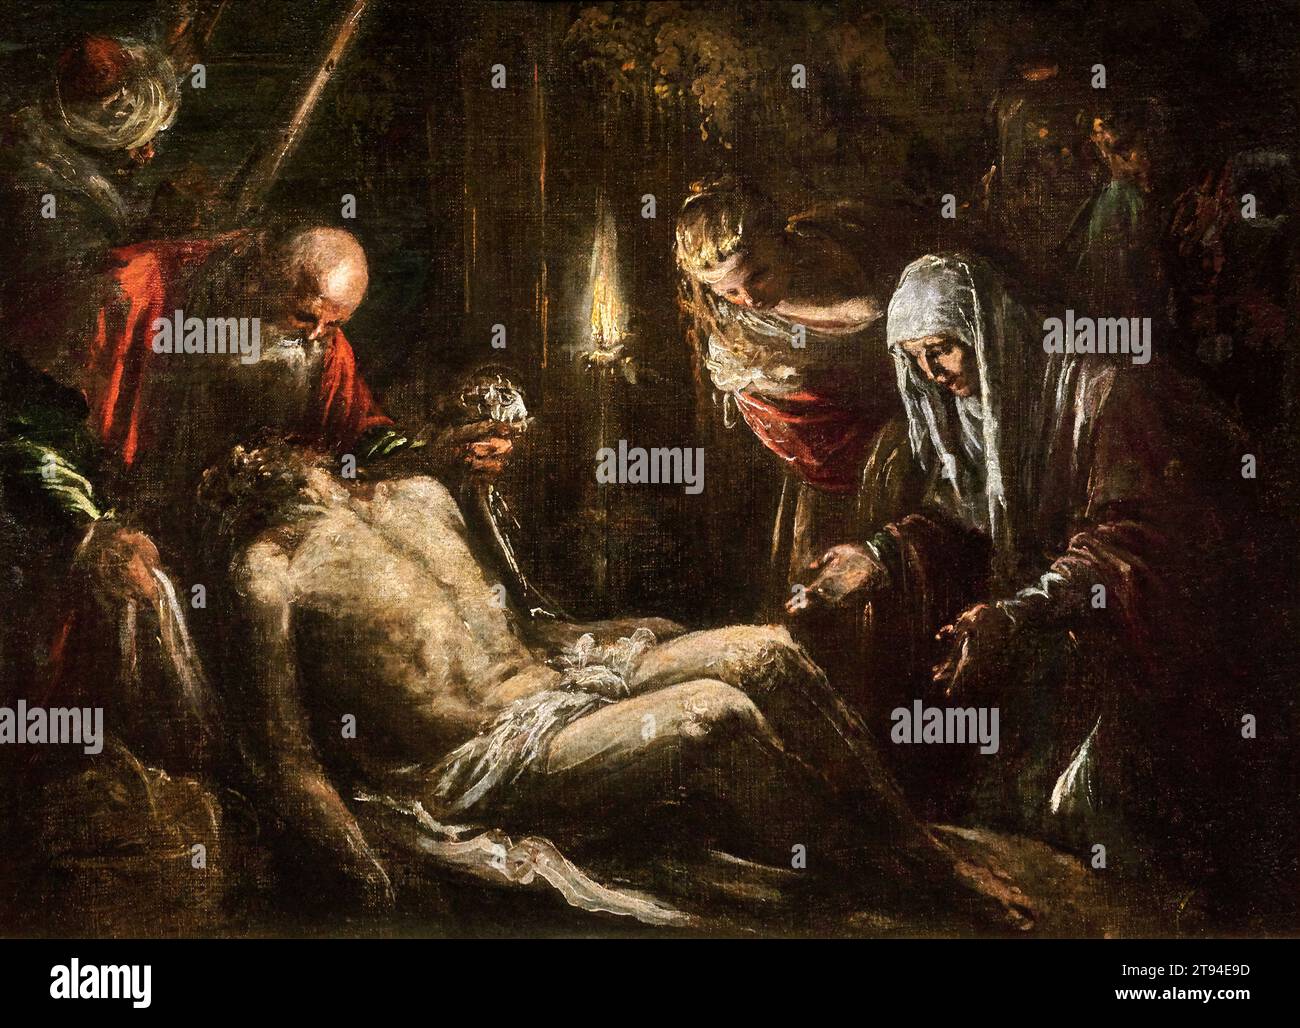 Deposizione di Cristo -  olio su tela  - Jacopo Bassano  - 1580  -  Lisbona, Museu Nacional de Arte Antiga Stock Photo